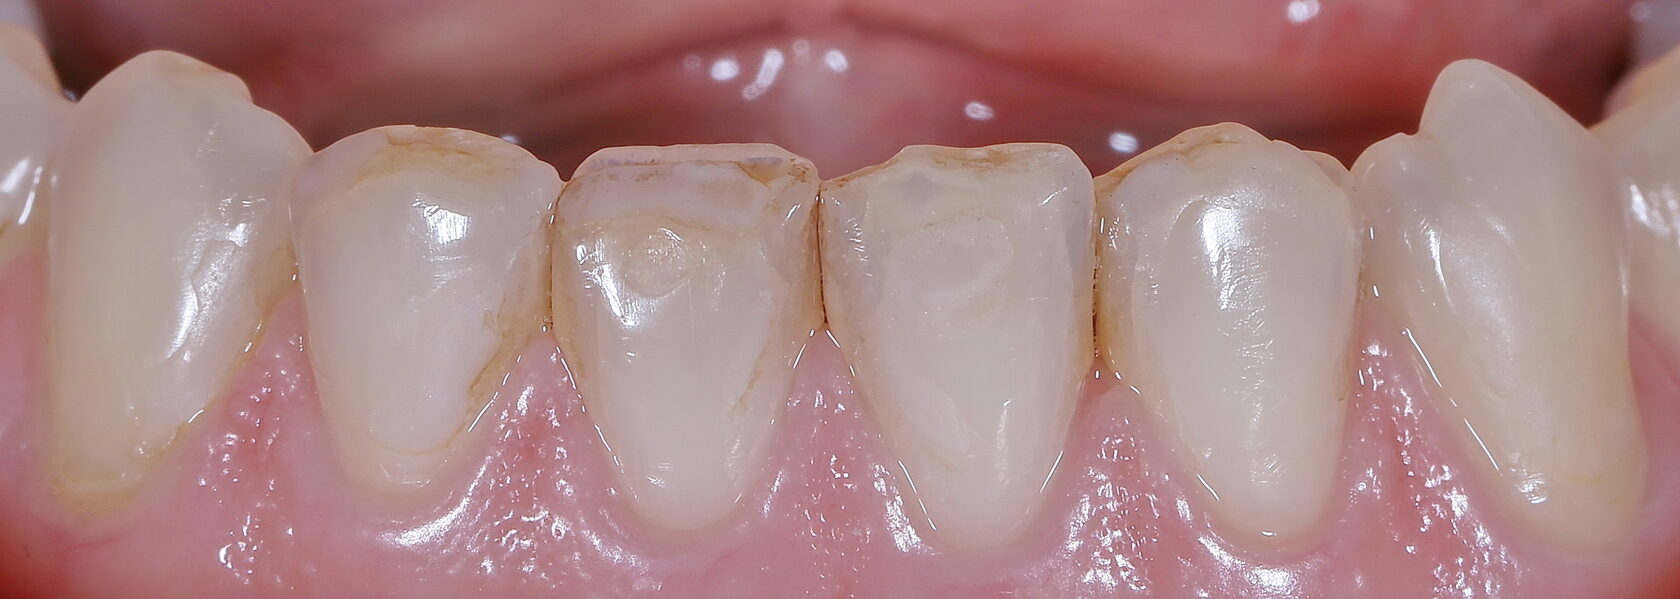 Художественная реставрация зубов в стоматологии